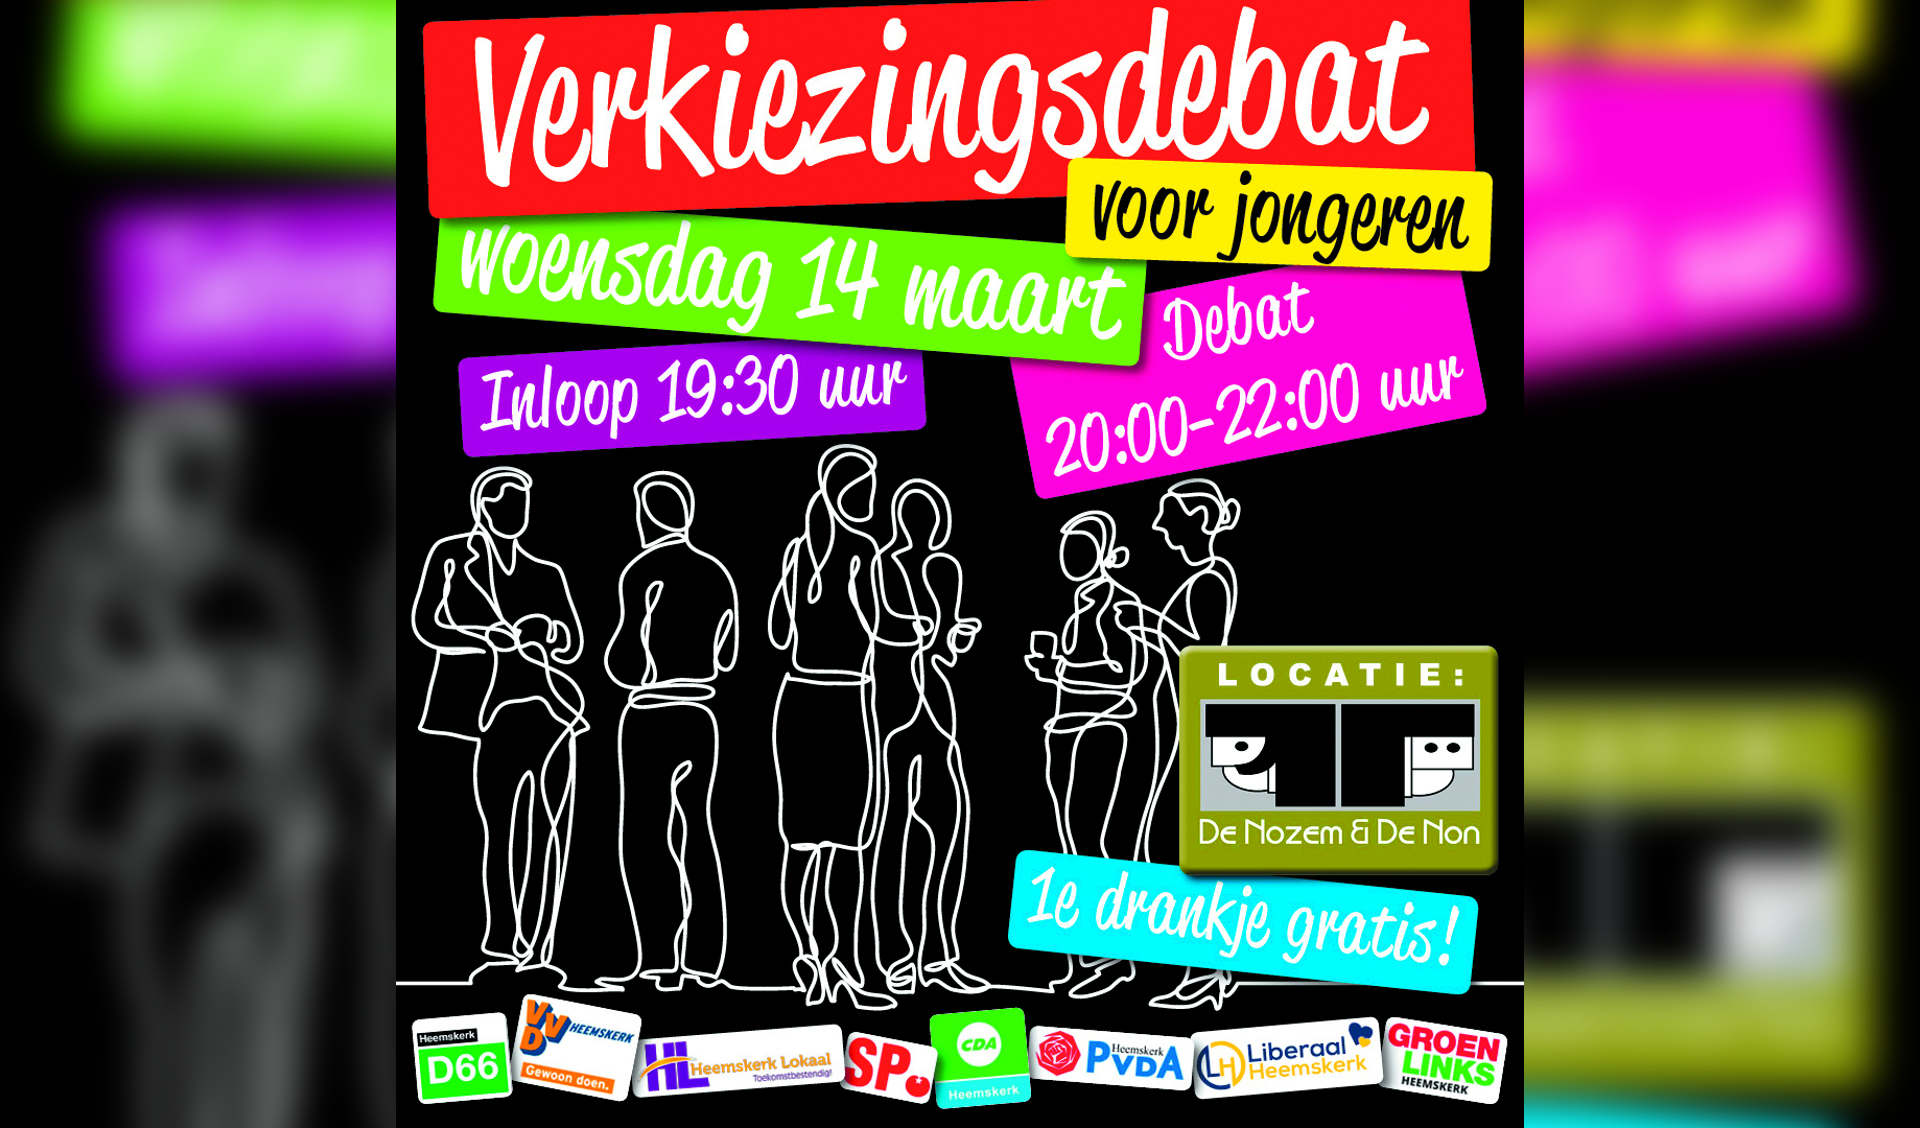 De poster van het verkiezingsdebat voor jongeren op 14 maart. (foto aangeleverd)